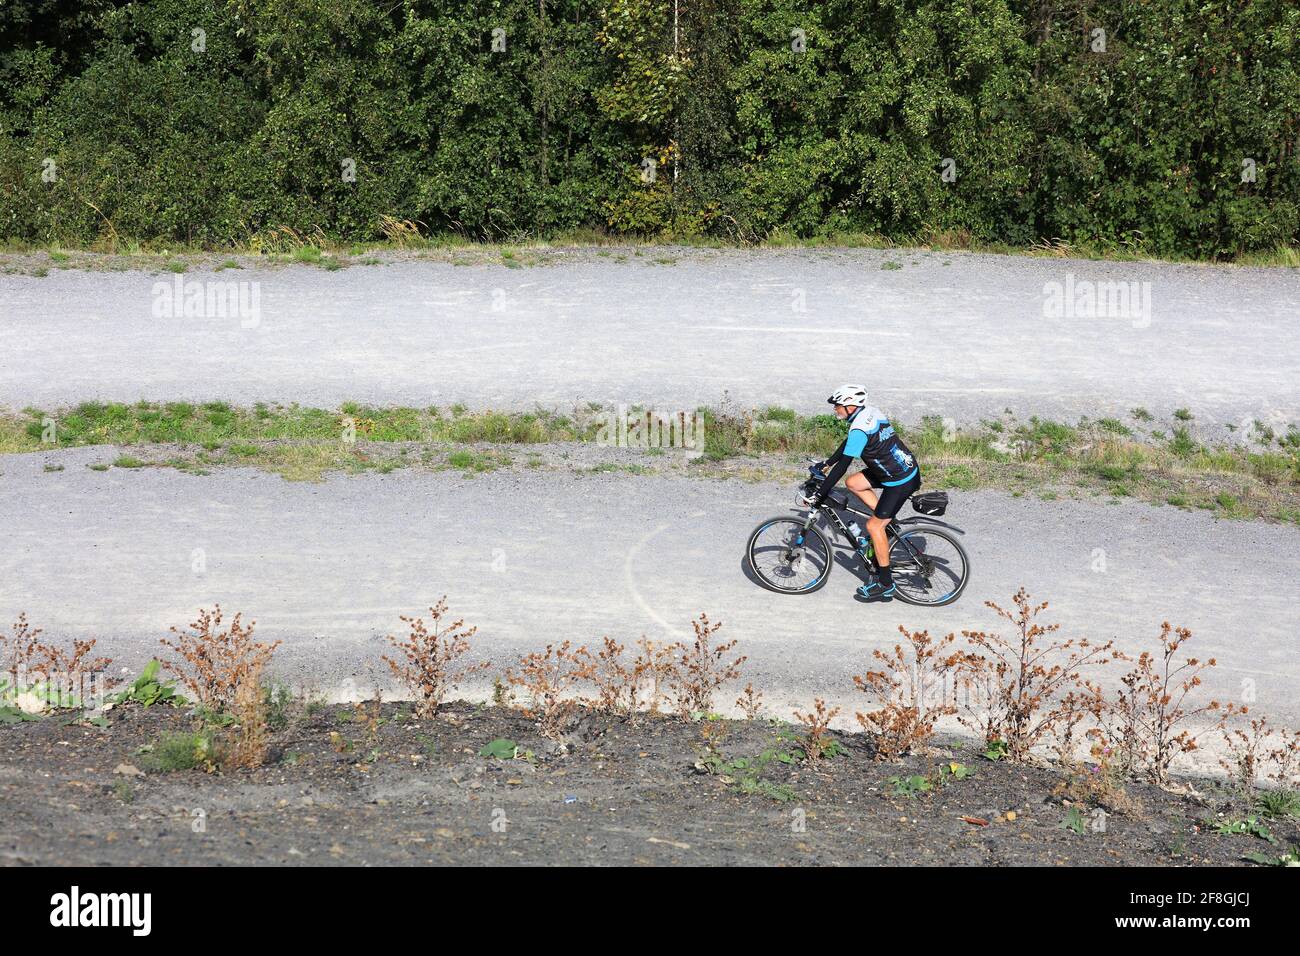 GELSENKIRCHEN, DEUTSCHLAND - 17. SEPTEMBER 2020: Radfahrer besuchen das umfunktionierte Naherholungsgebiet der Rheinelbe-Schlackenhaufen in der Stadt Gelsenkirchen, einem Teil von Ruhrge Stockfoto